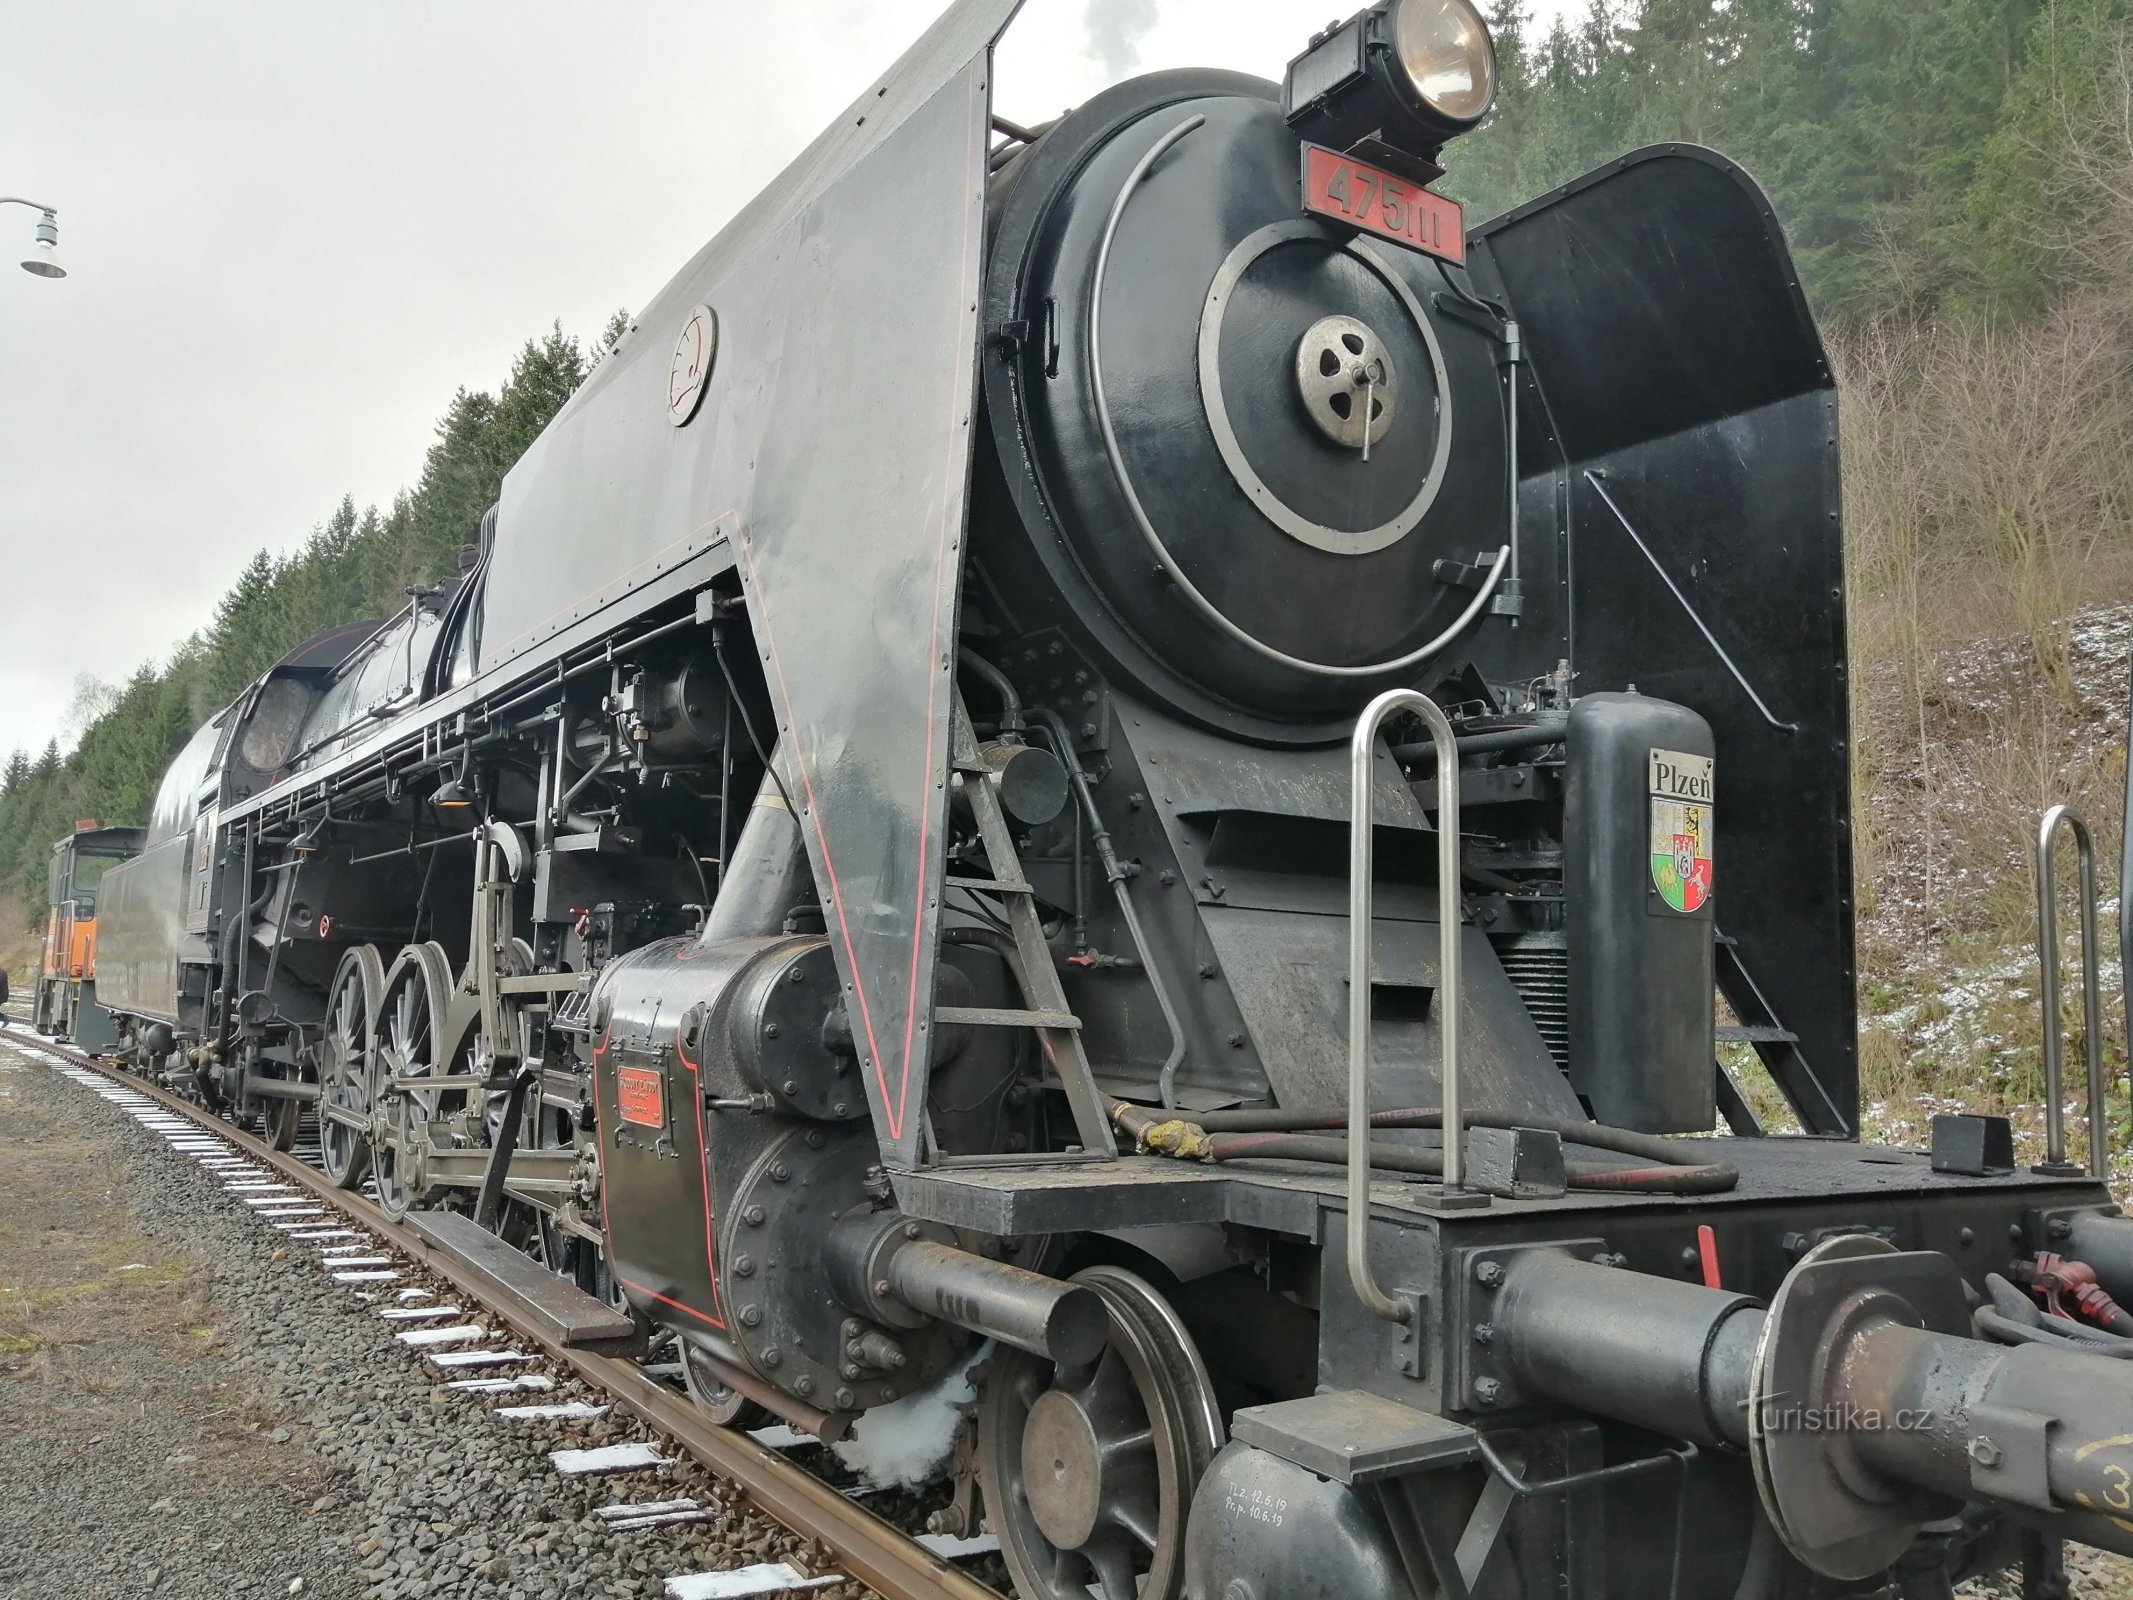 シュレヒティチュナと呼ばれる蒸気機関車 475.111 の写真 - ソコロフ